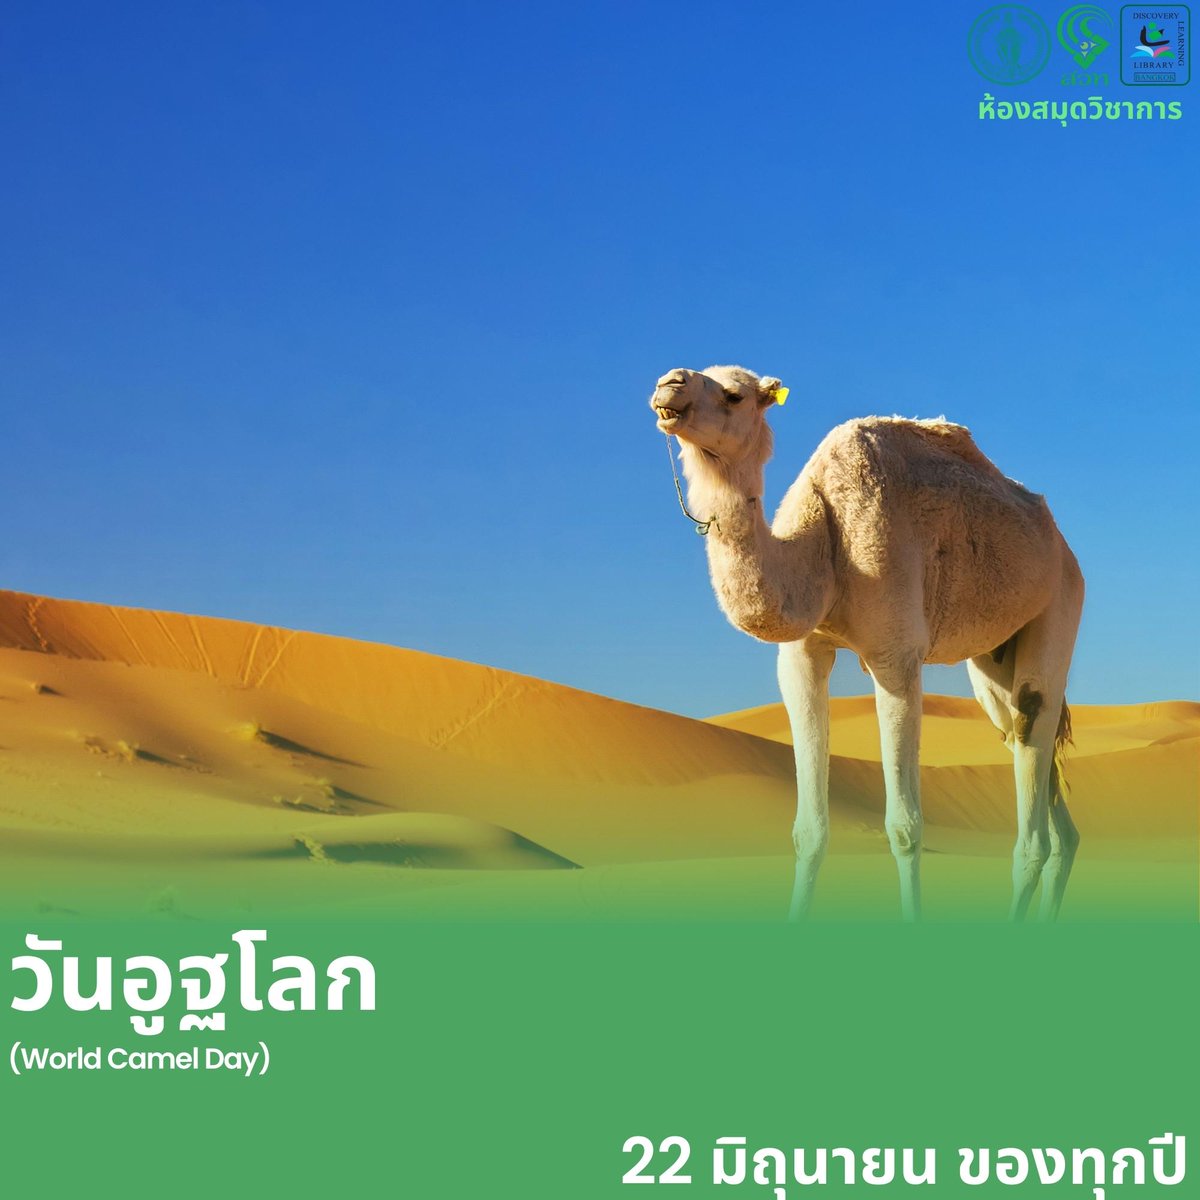 วันที่ 22 มิถุนายน ของทุกปี
เป็นวันวันอูฐโลก
(World Camel Day : WCD)
เพื่อสนับสนุน ส่งเสริม เผยแพร่ความตระหนักรู้
เกี่ยวกับความสำคัญของอูฐ

ที่มา : camel4all.info, ecocalendar.eu

#วันอูฐโลก
#WorldCamelDay
#WCD #อูฐ
#WhatDayisToday
#WhatDayisToday2023